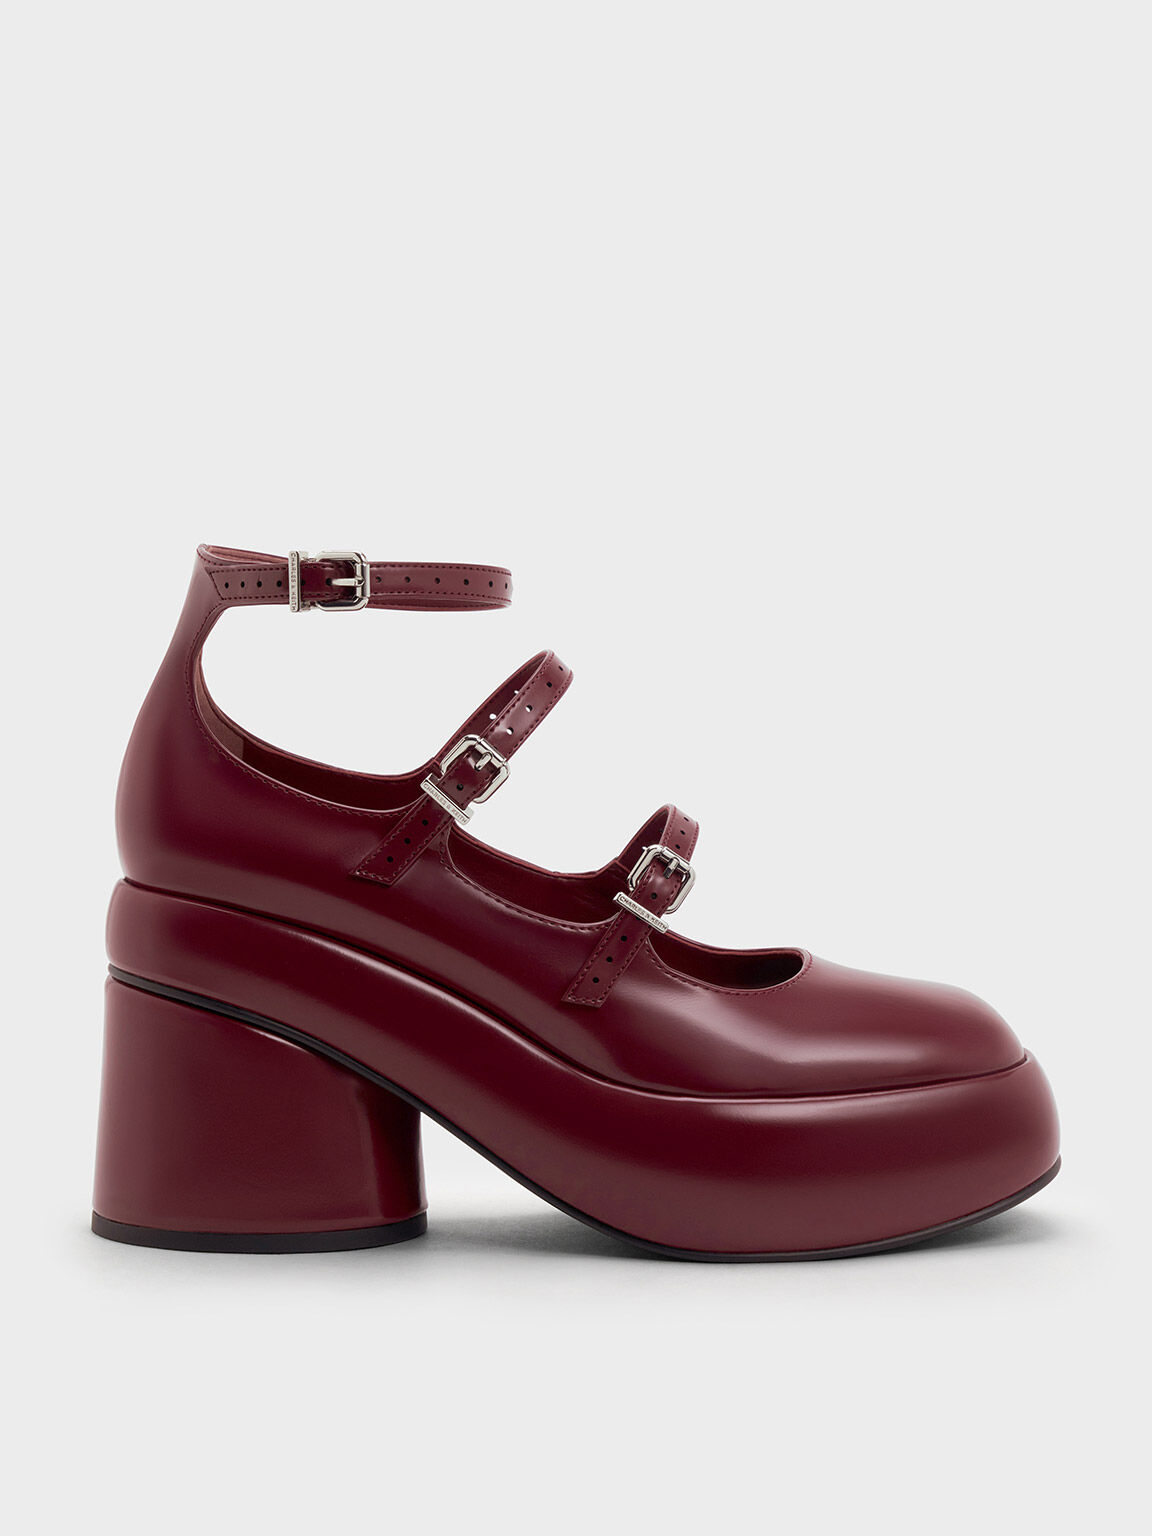 Buy Cleo Maroon Heel Slip On Sandal for Women Online at Khadims |  53005353050